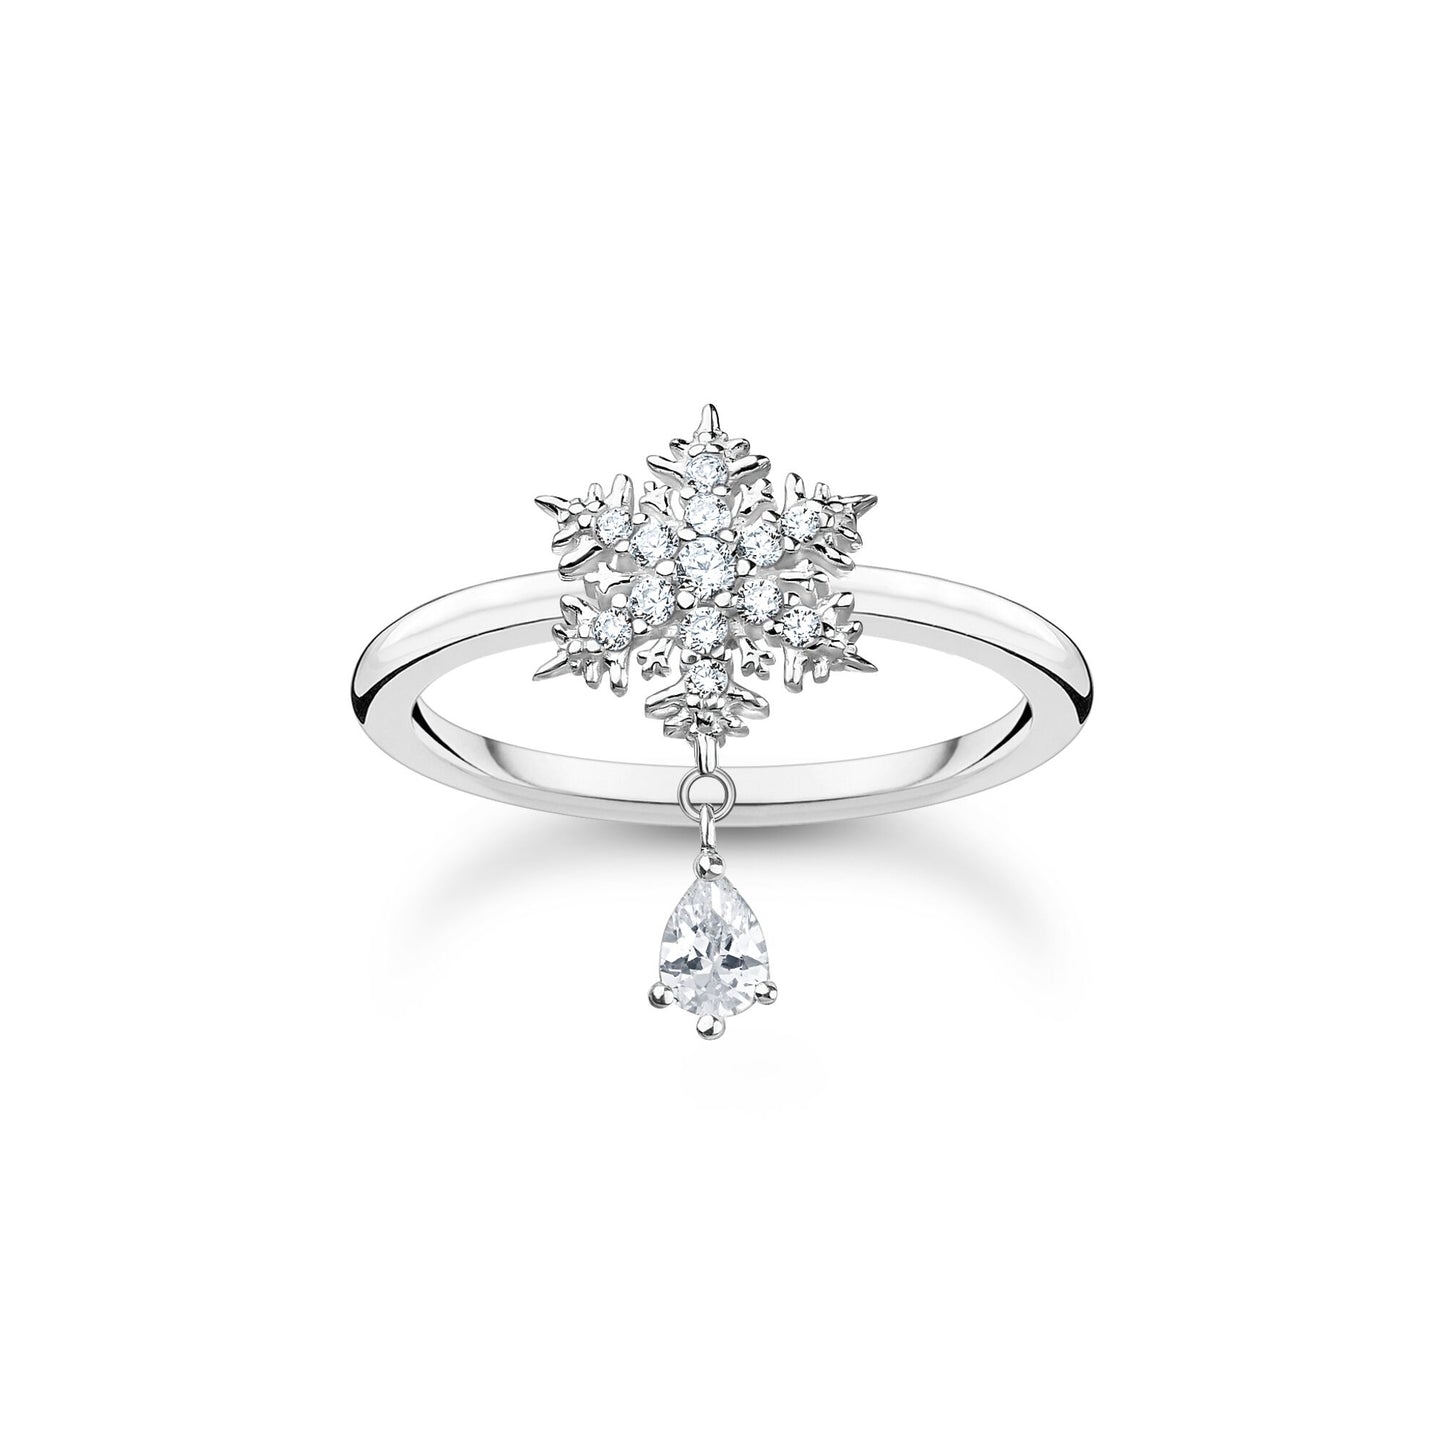 THOMAS SABO Ring snowflake with white stones silver